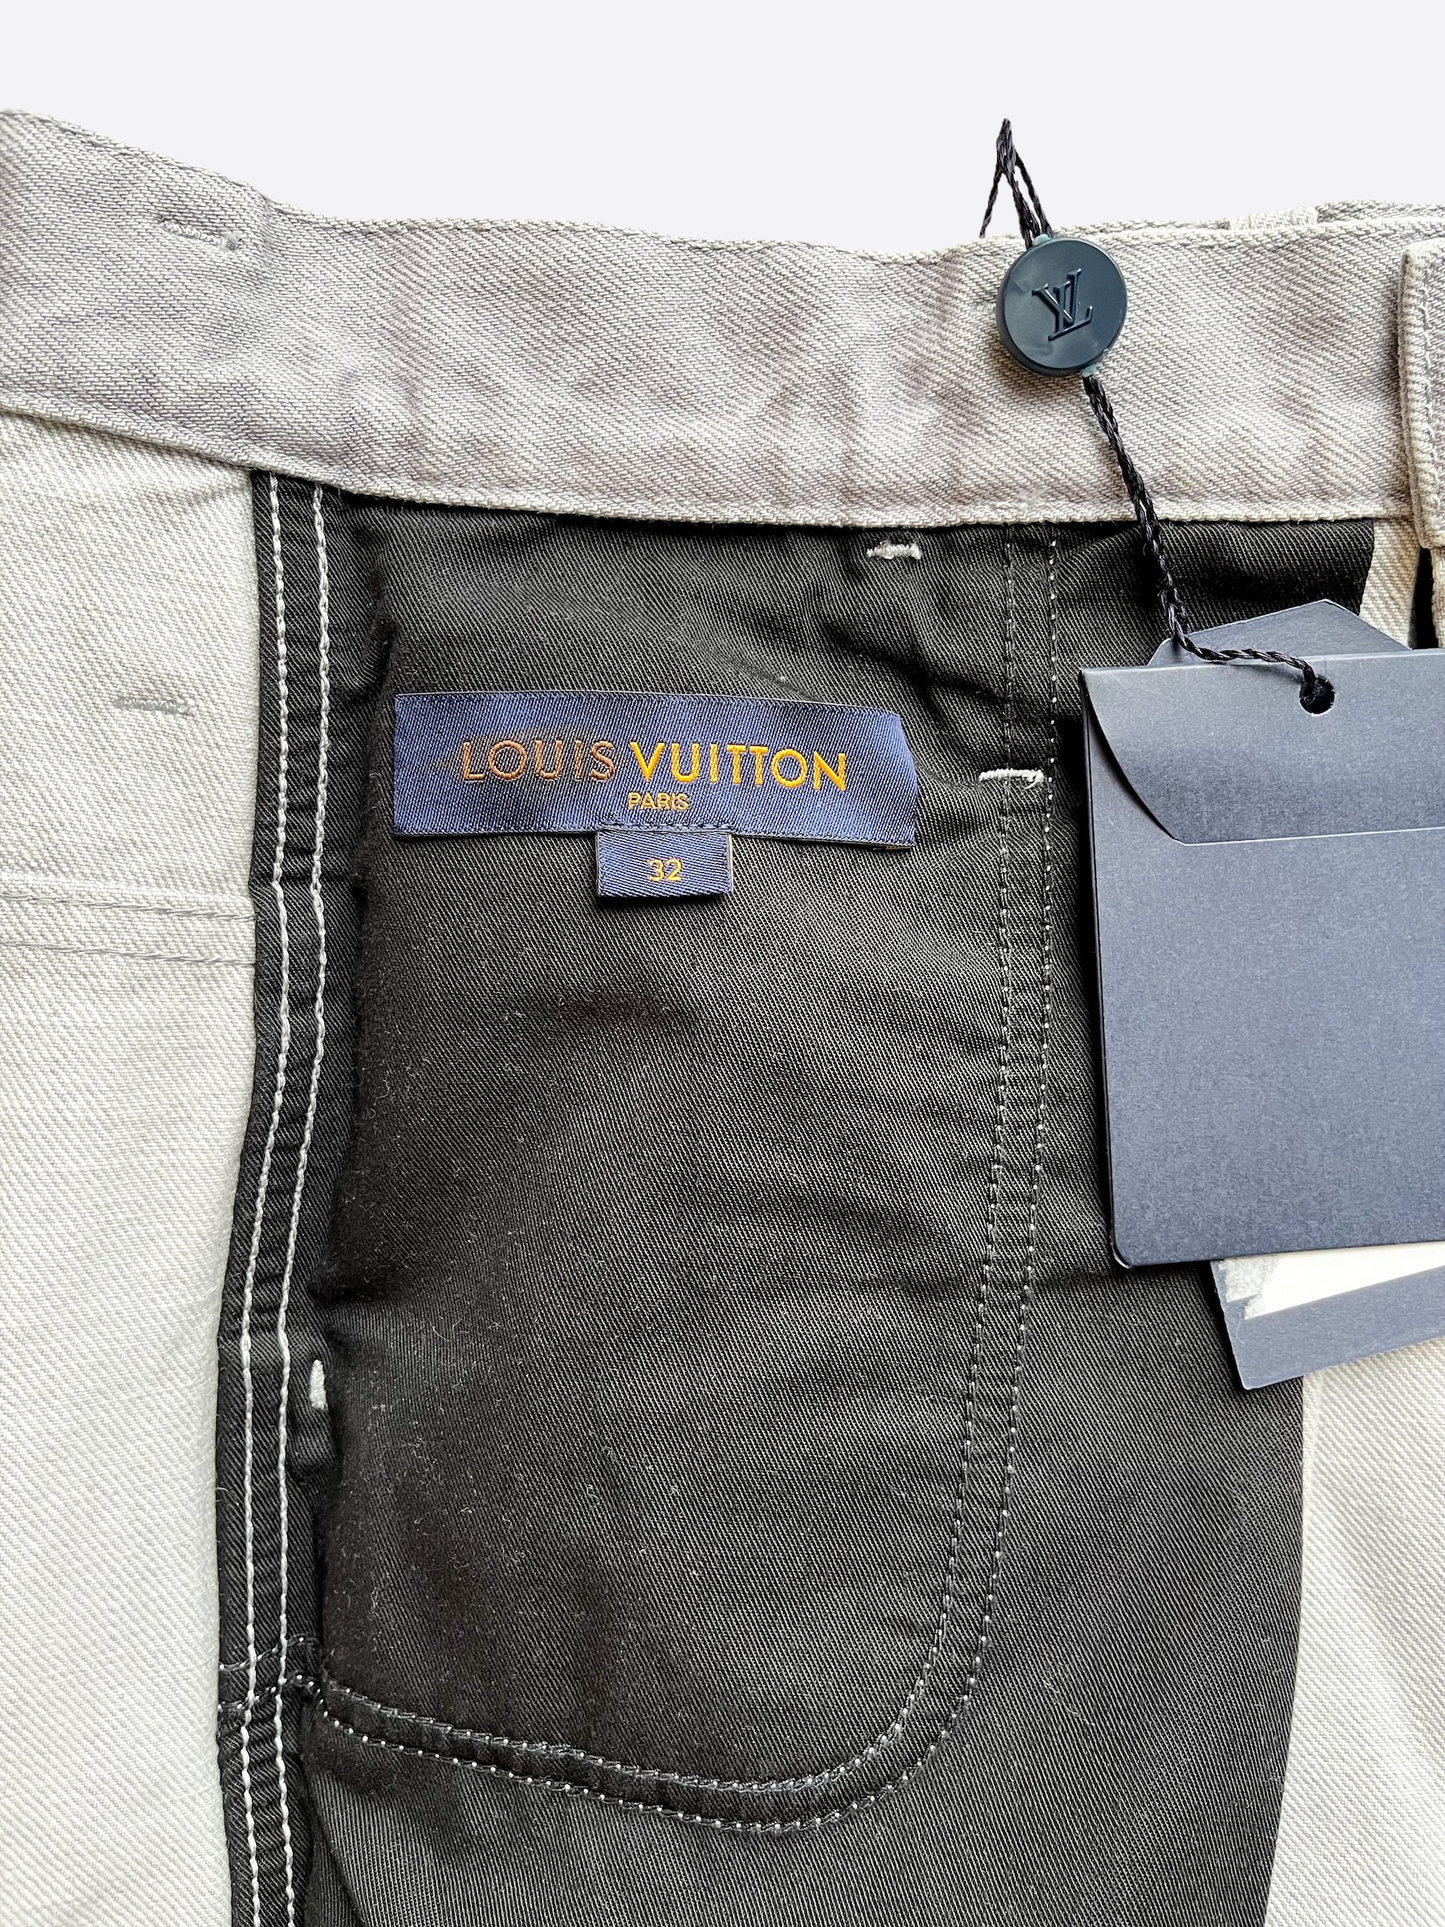 Louis Vuitton, Jeans, New Louis Vuitton Paris Mensskinny Jeans Made In  France Grey Size 3 Authentic